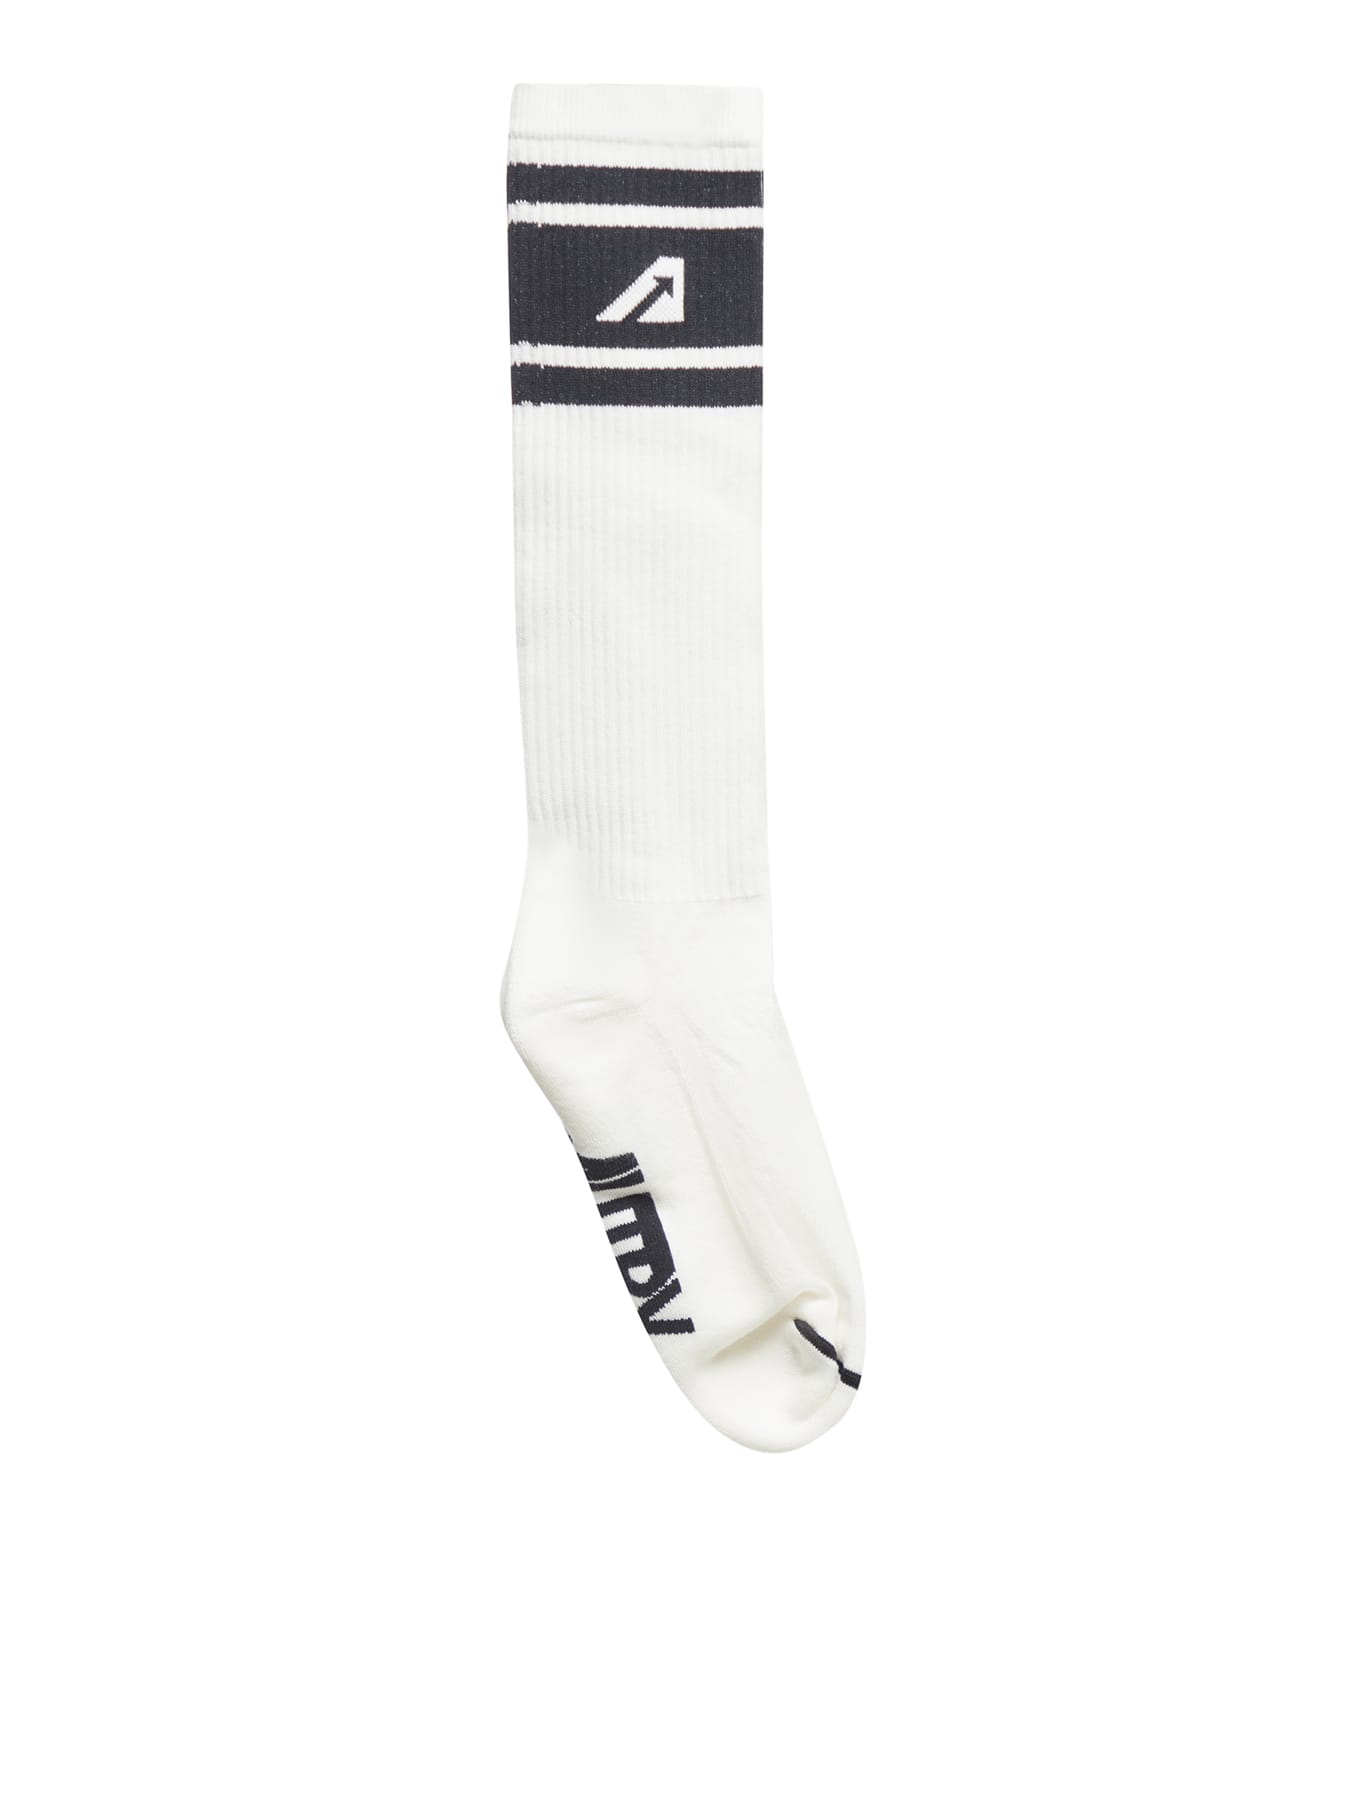 Autry Socks Main Unisex In Wk White Black